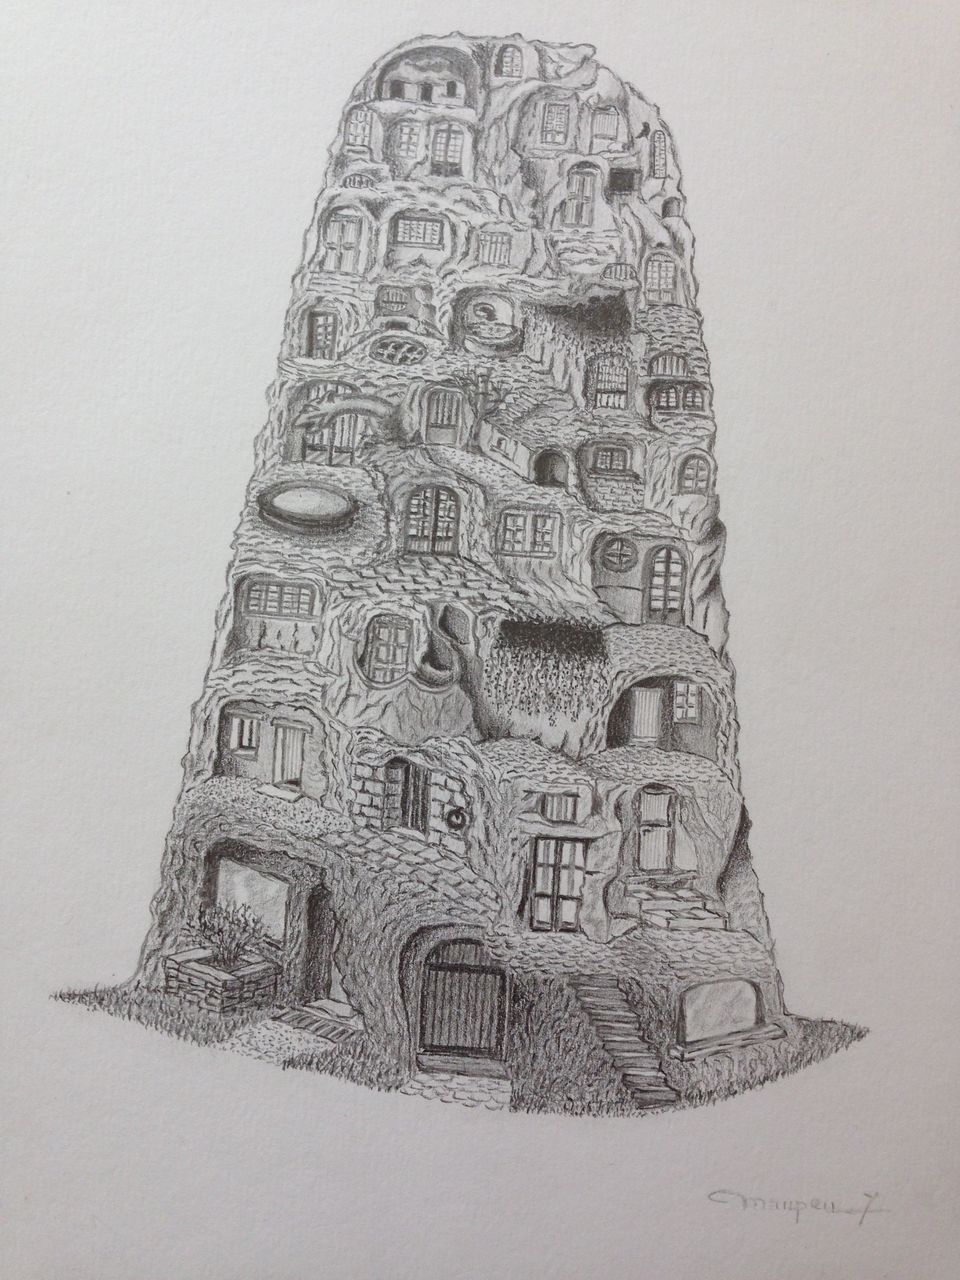 Yves Maupeu Structure d'architecture imaginée au crayon. 